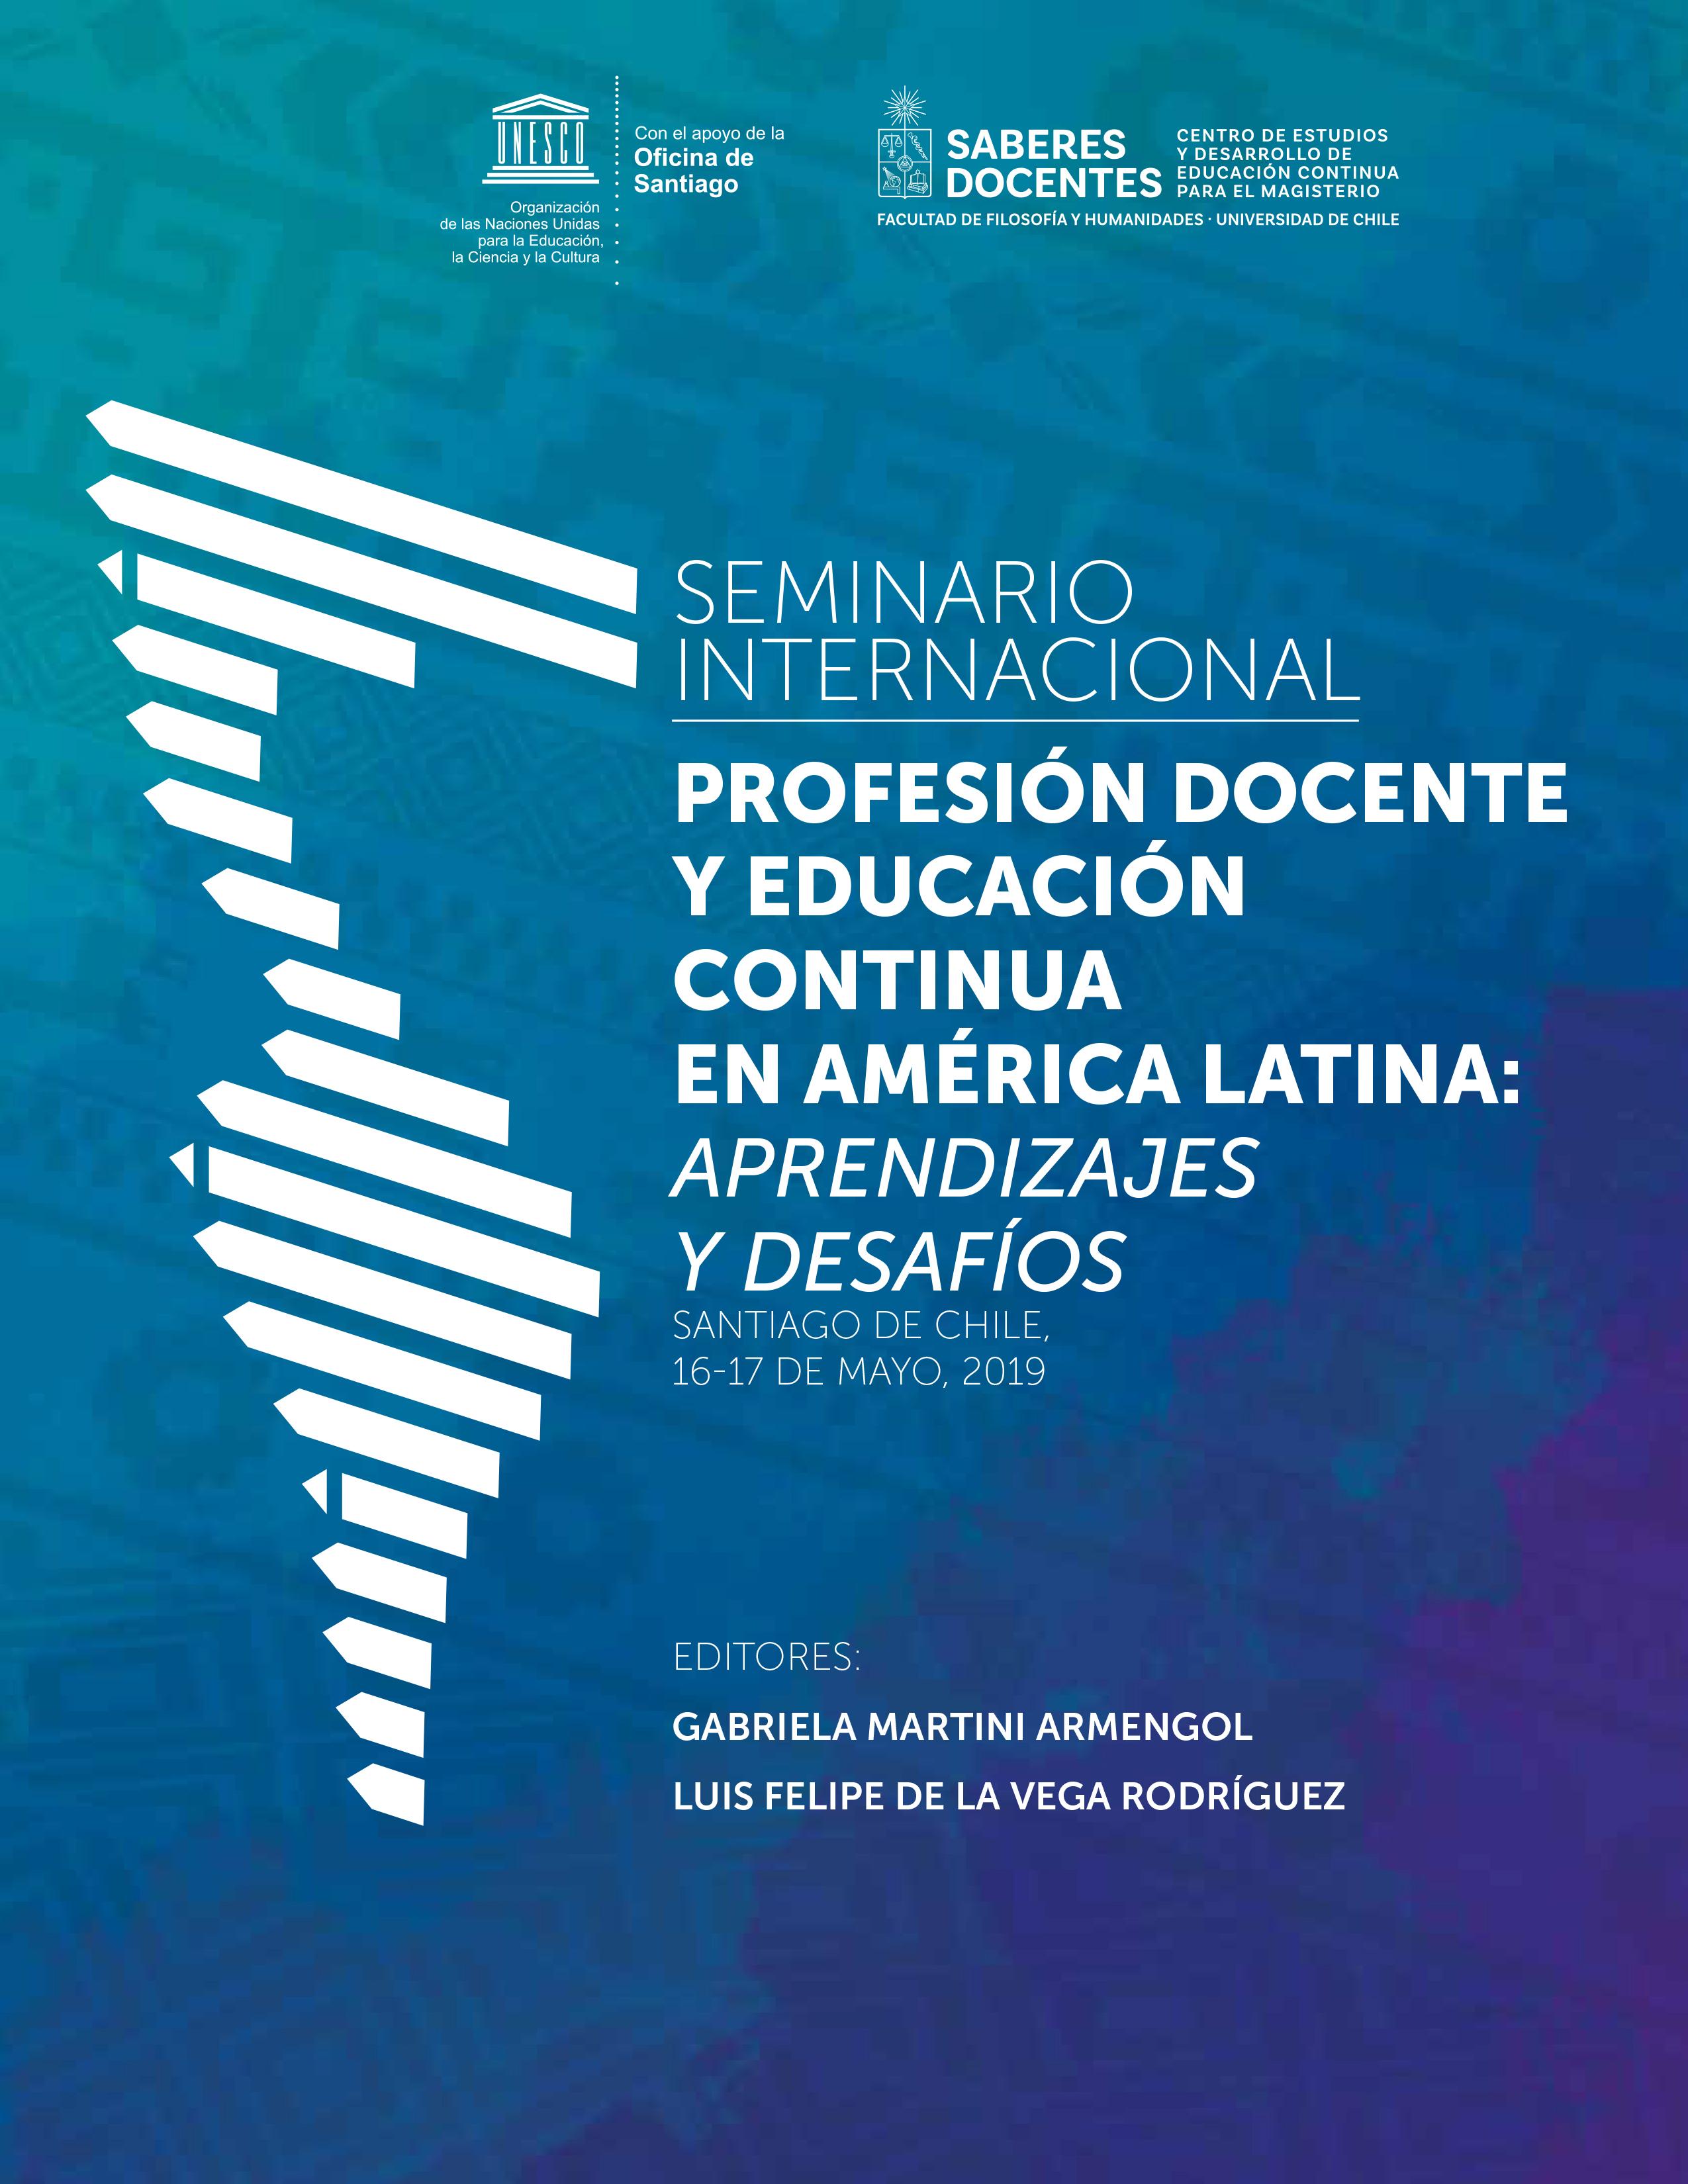 Seminario Internacional Profesión Docente y Educación Continua en América Latina. Aprendizajes y desafíos.